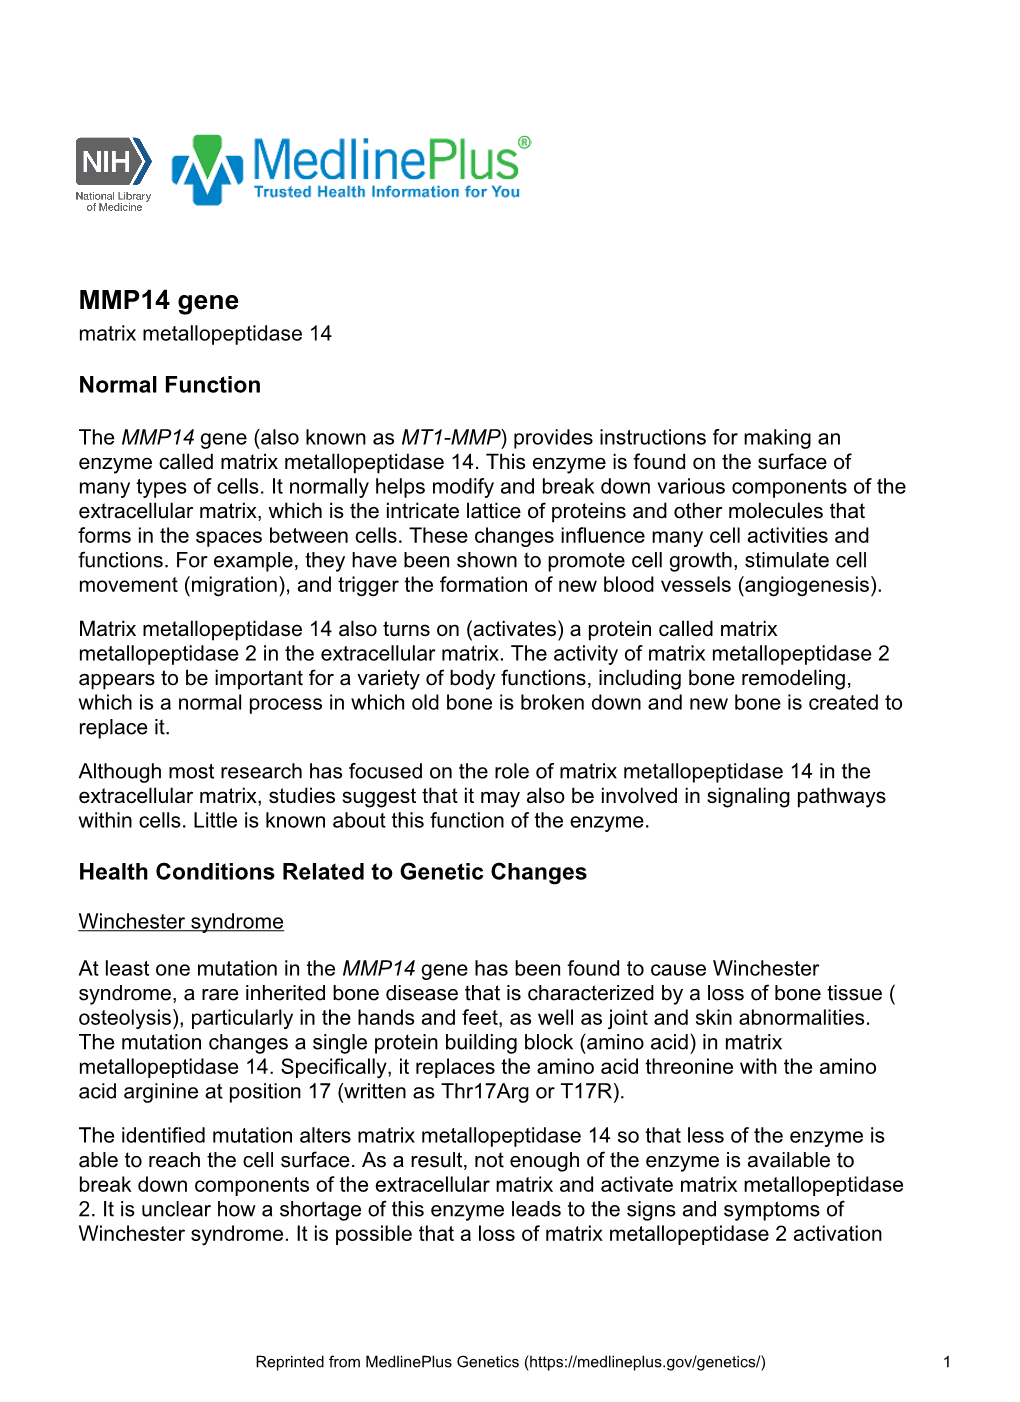 MMP14 Gene Matrix Metallopeptidase 14